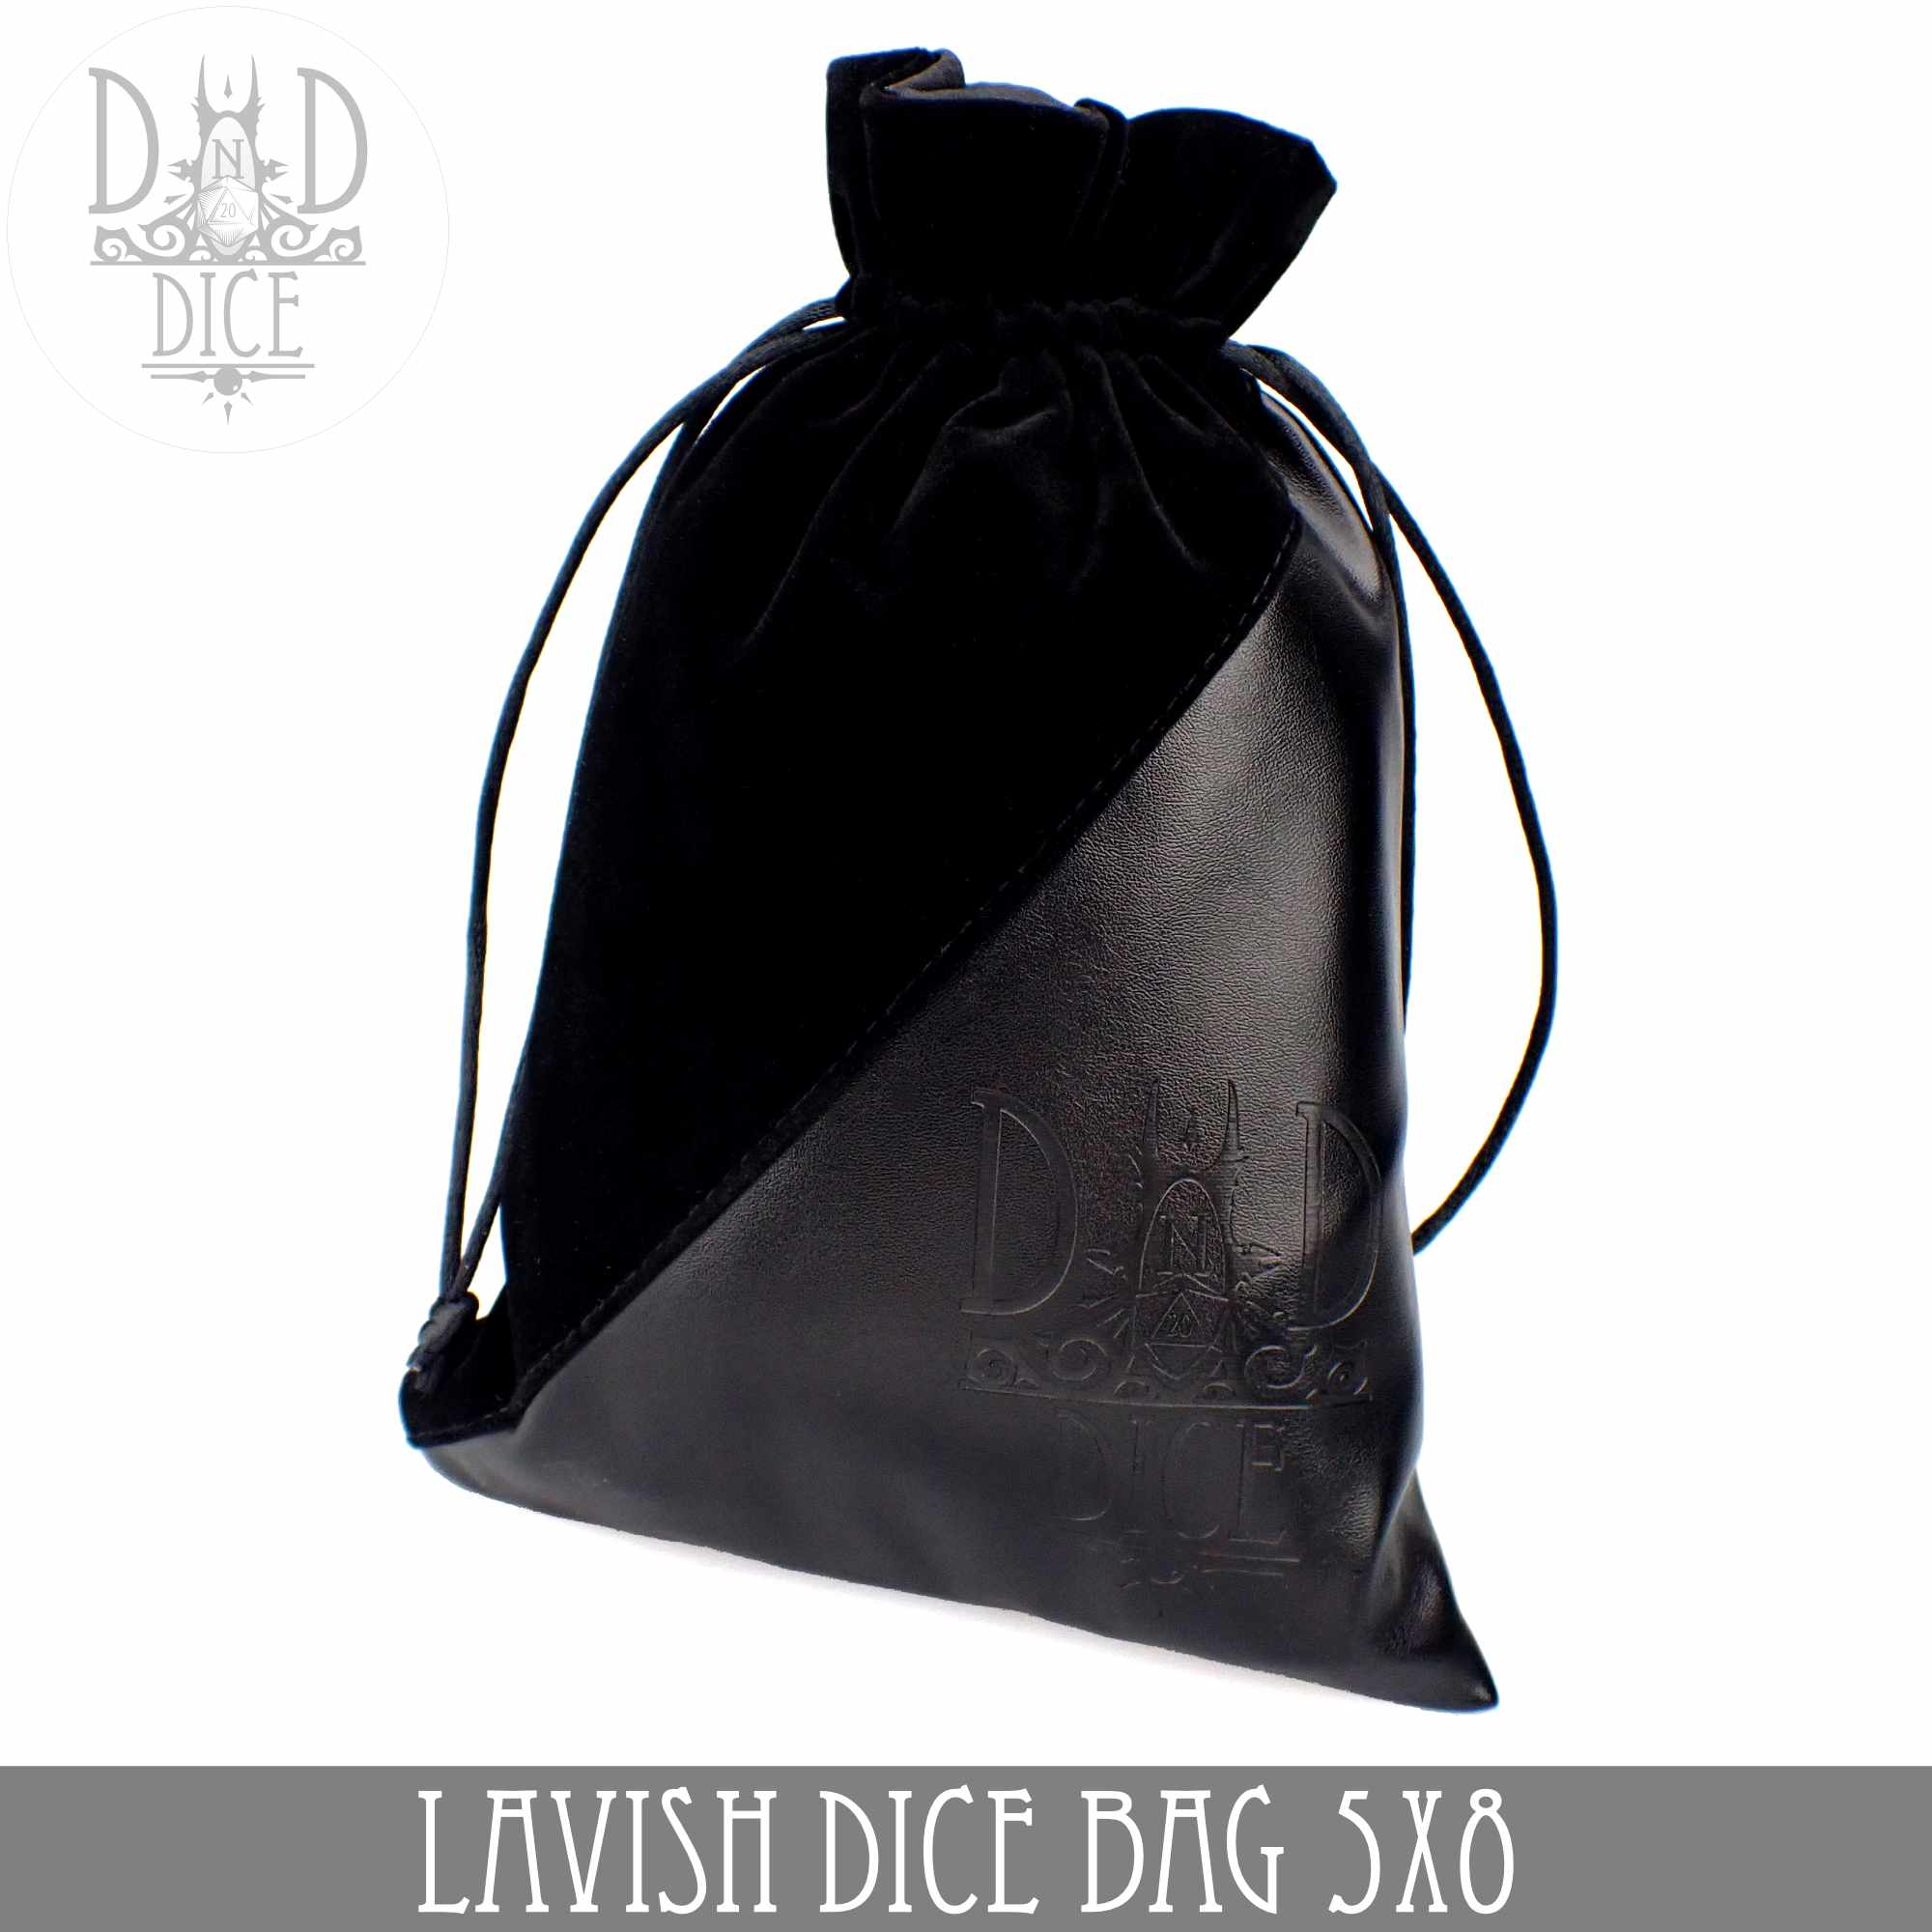 Lavish Dice Bag 5x8